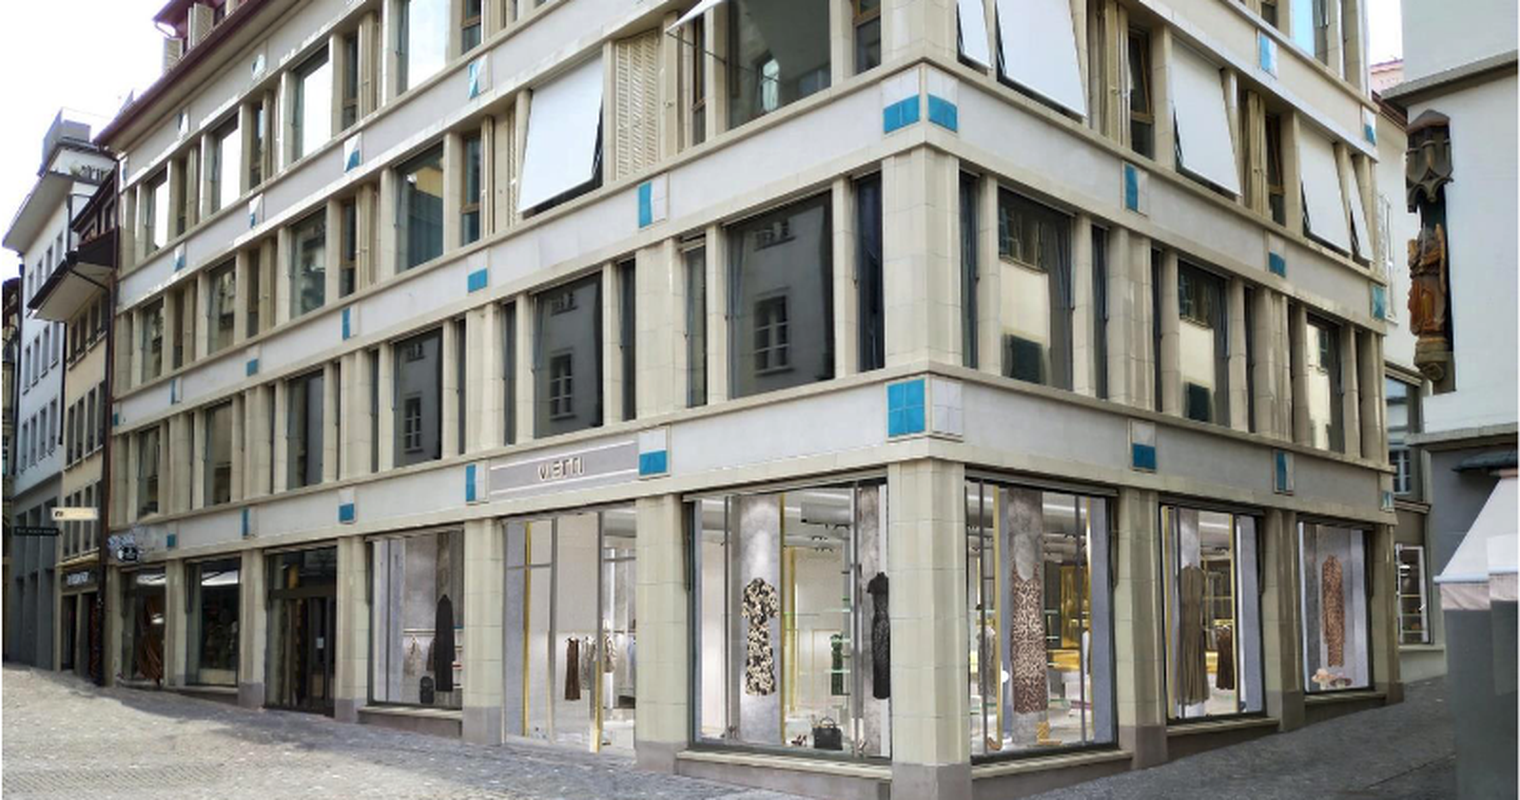 Ins ehemalige C&A-Gebäude zieht ein Luxus-Kleiderladen